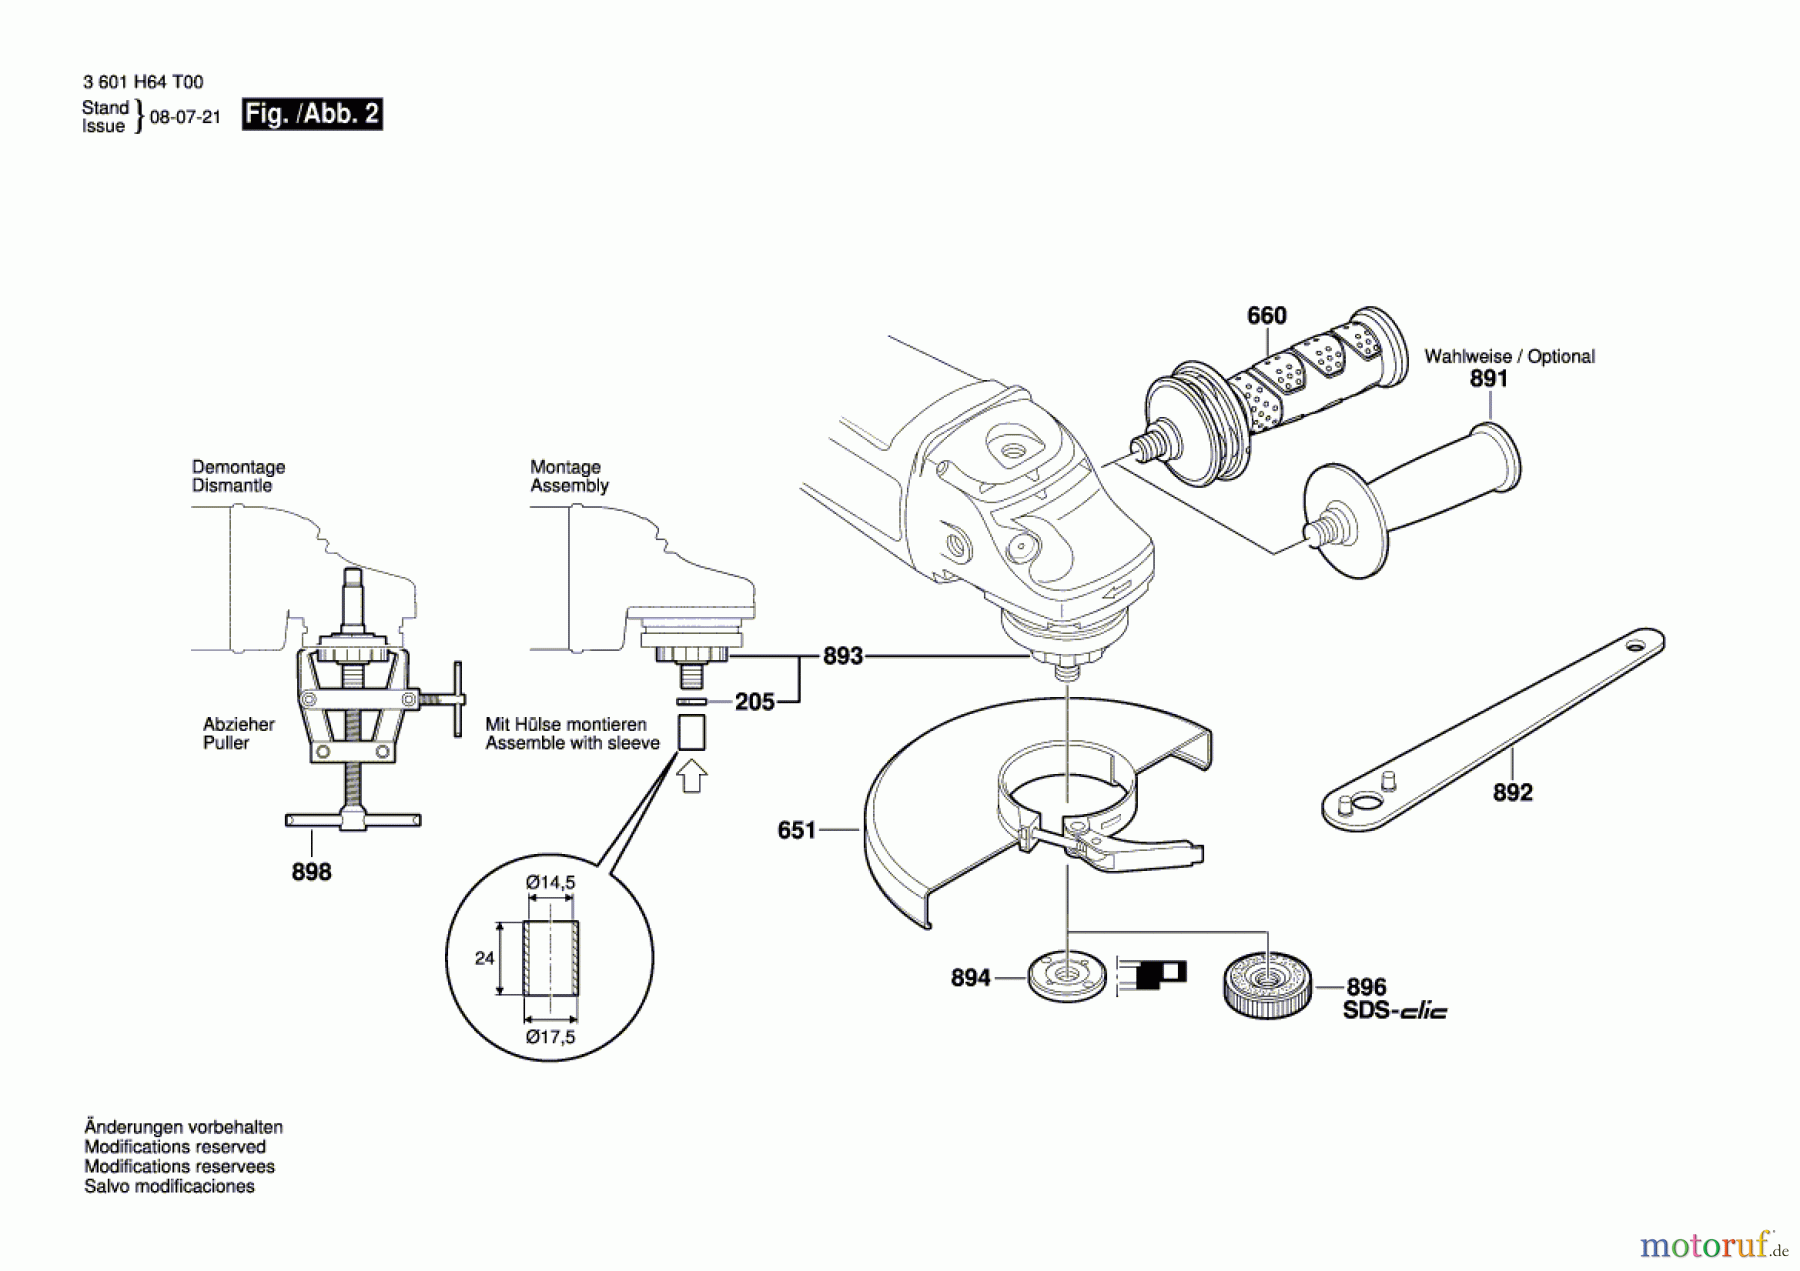  Bosch Werkzeug Winkelschleifer GWS 24-230 JBX Seite 2